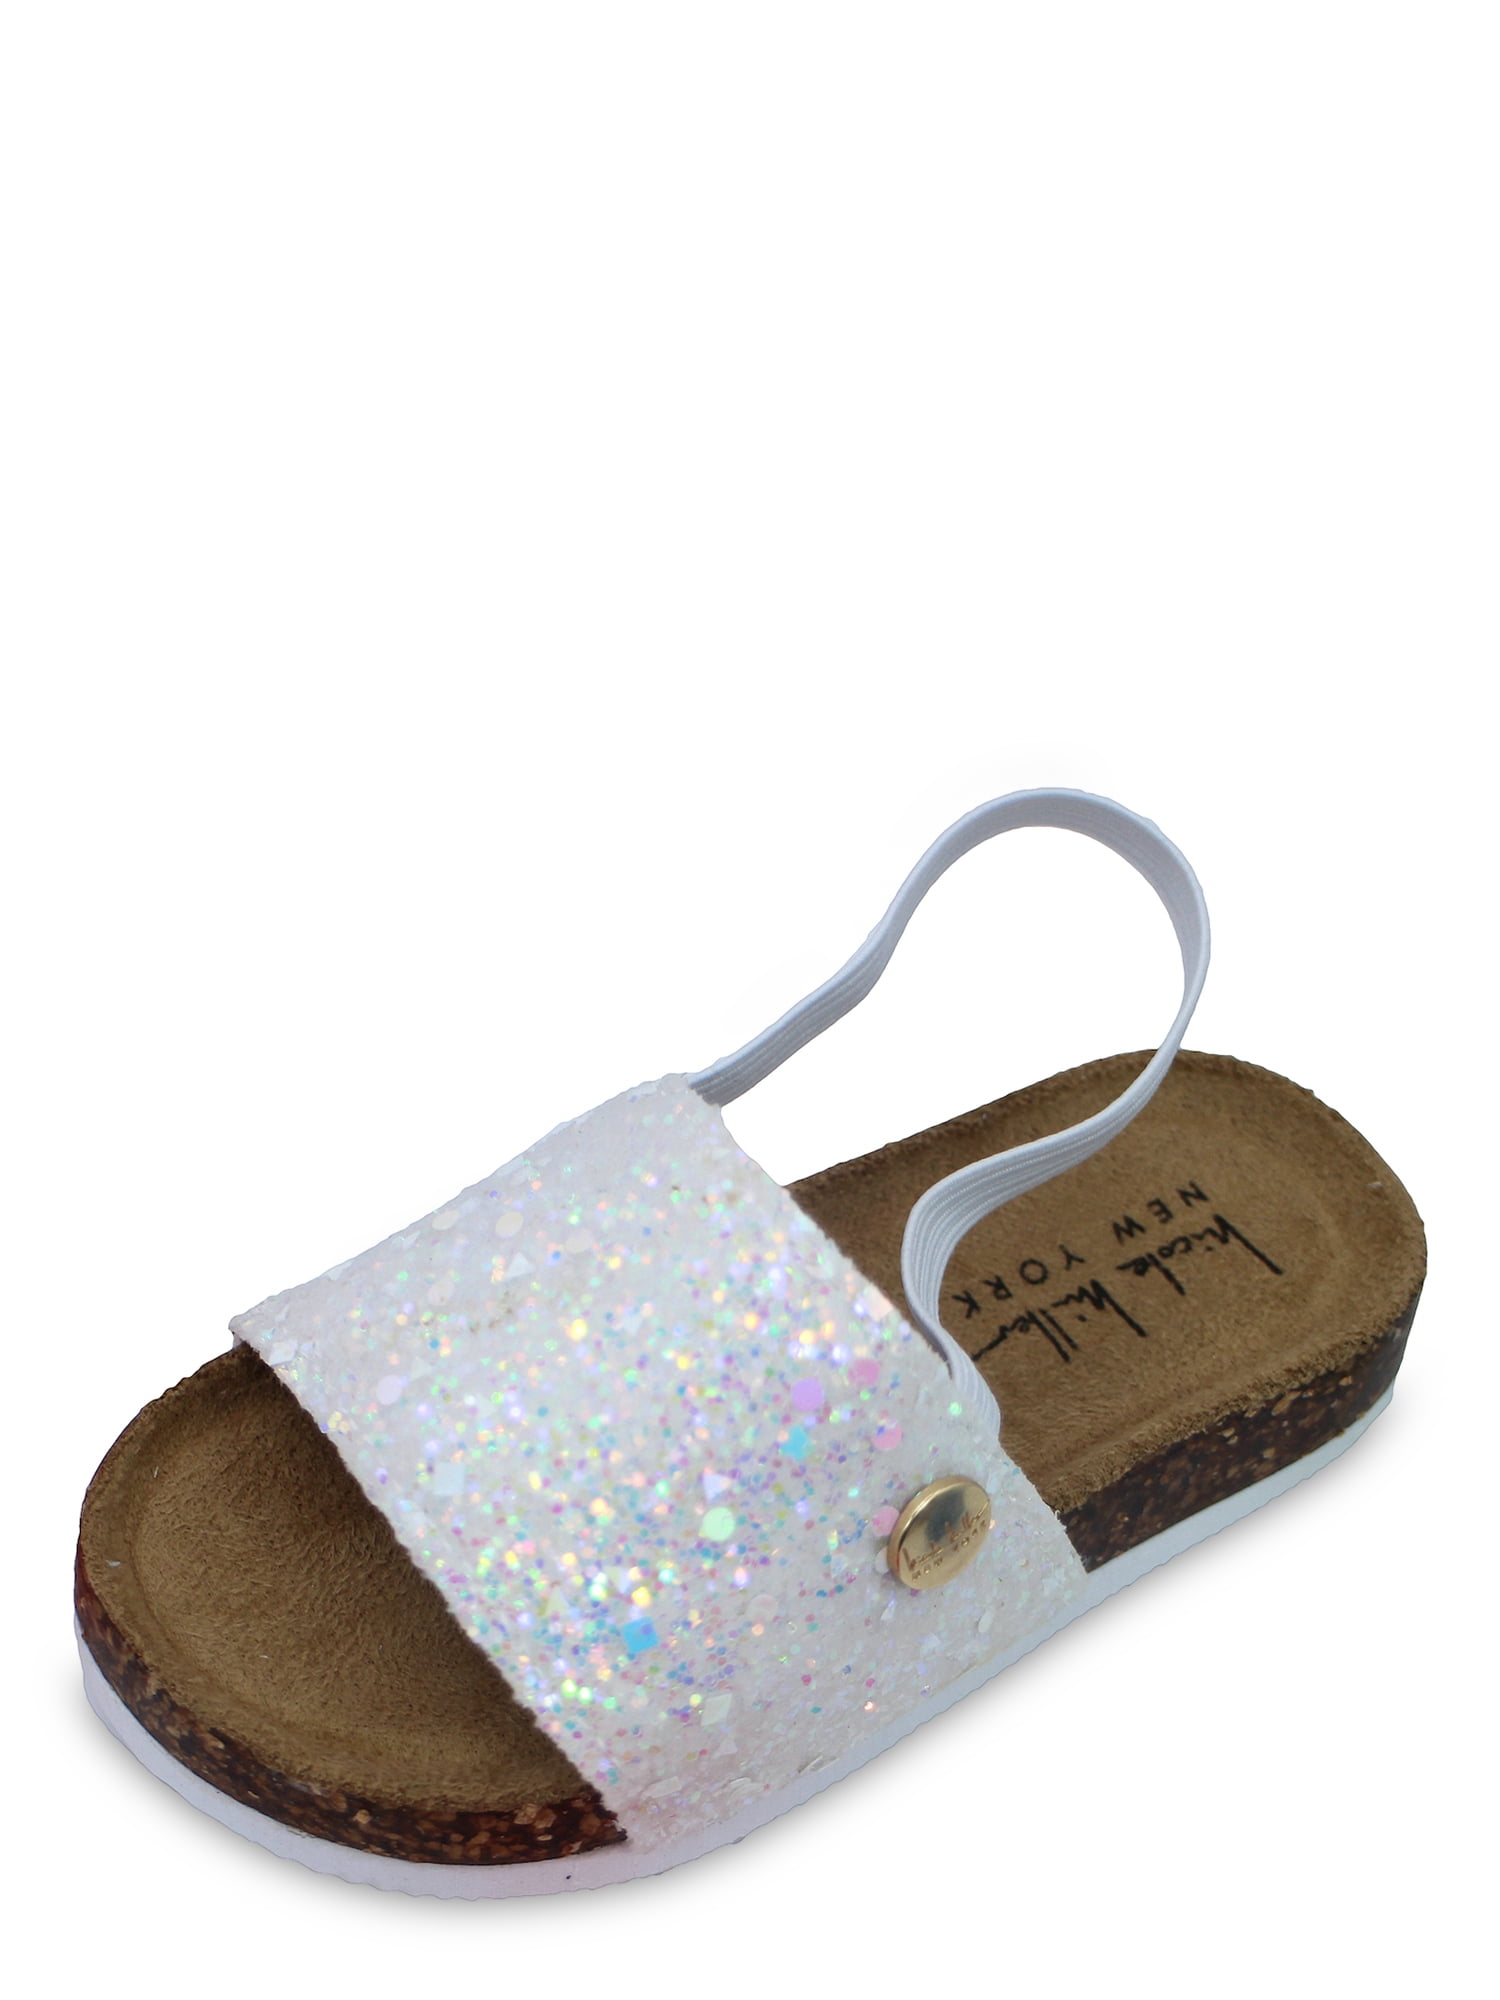 Toddler Nicole Miller Girls Chunky Glitter Sandals